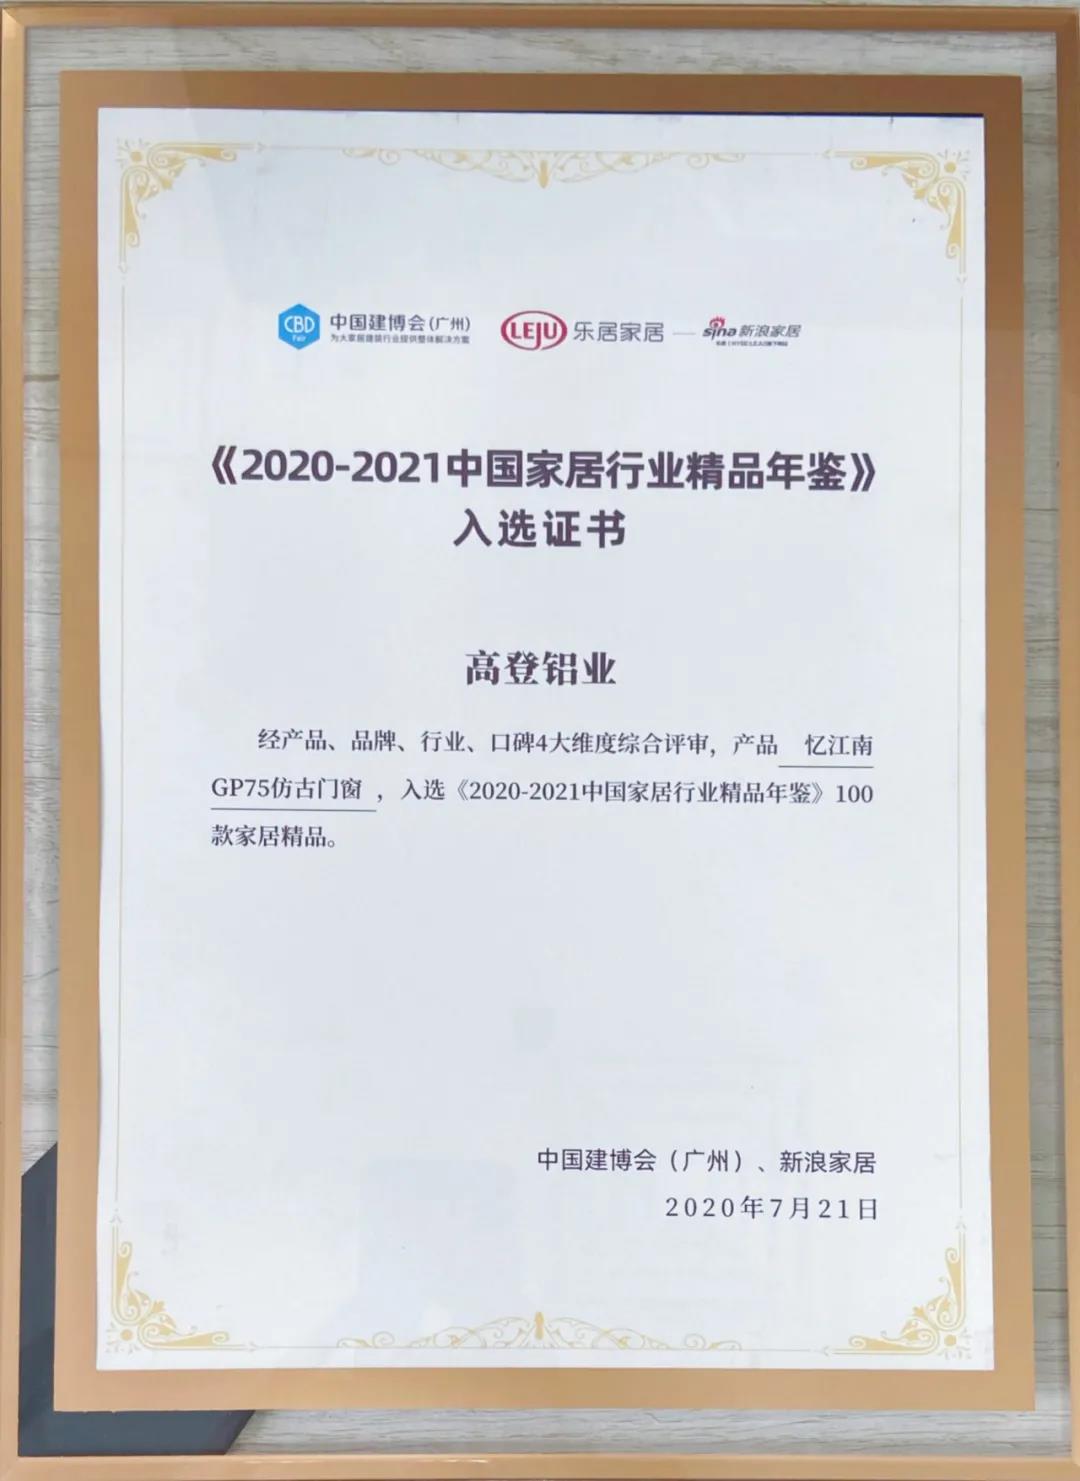 2021米乐官方旗舰店(中国)有限公司入选《2020-2021中国家居行业精品年鉴》